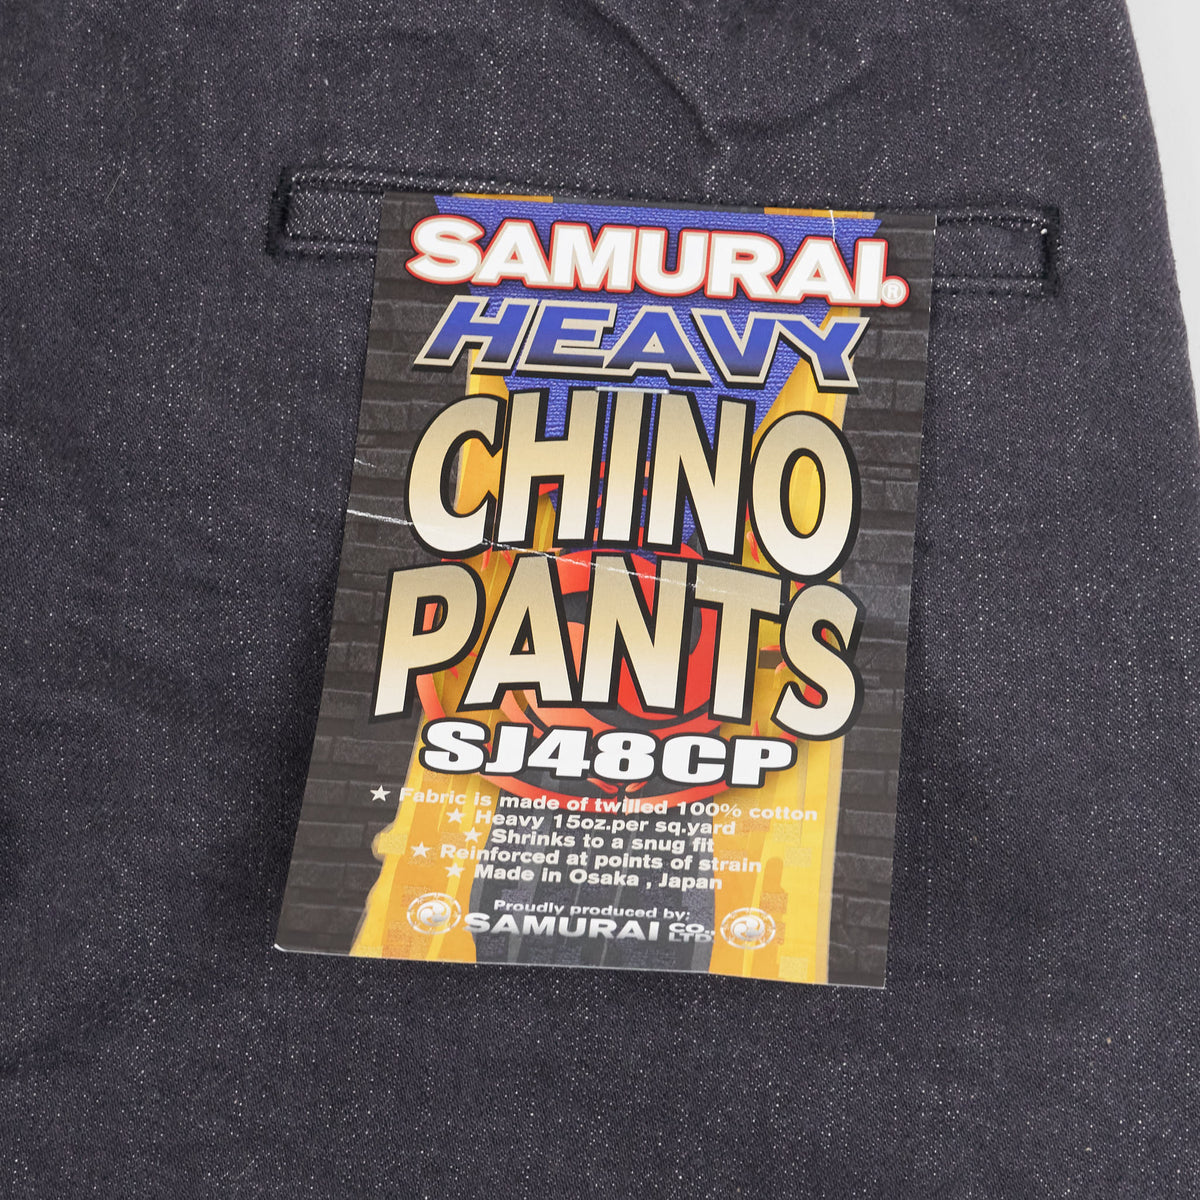 Samurai Jeans 15oz. Black Classic Wide Chino